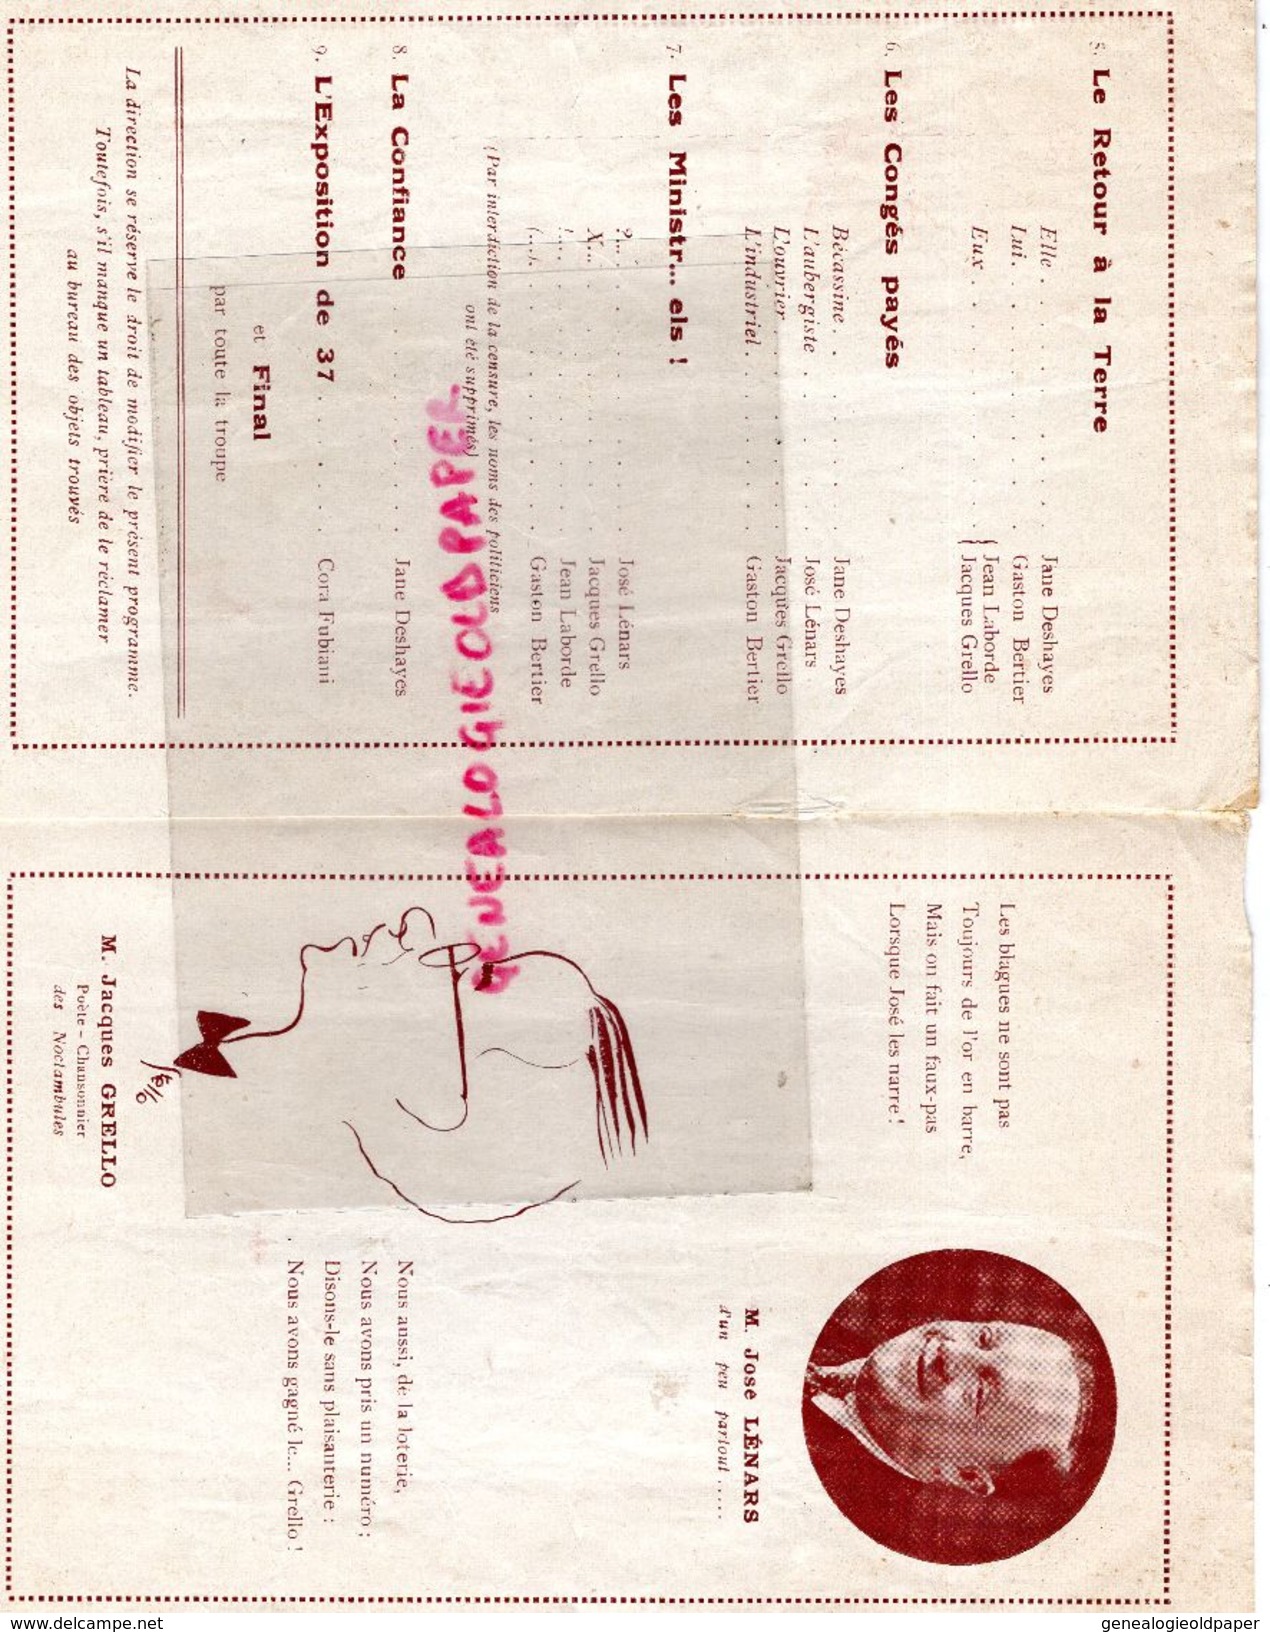 16- CONFOLENS-RARE PROGRAMME CHANSONNIERS MONTMARTRE-SALLES DES FETES 16 -11-1935-MARCEL LUCAS-JEAN LABORDE-GOULEBENEZE- - Programme